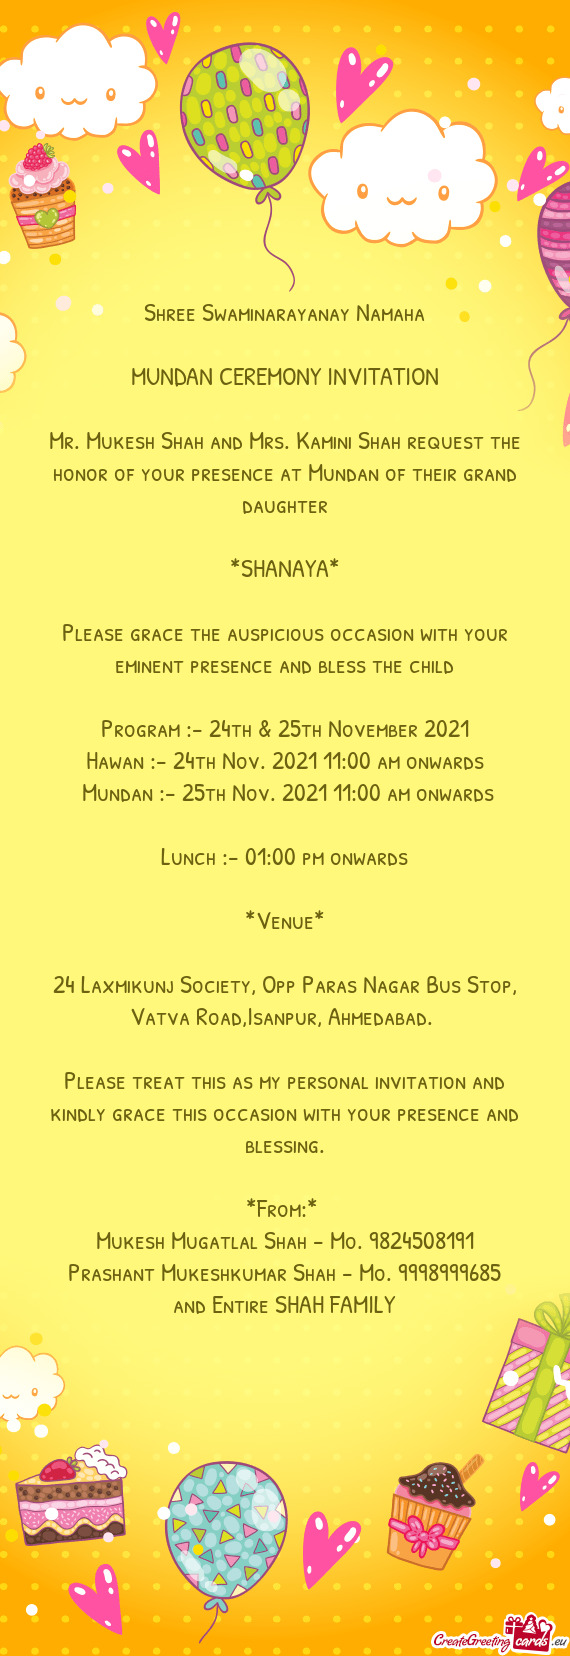 Shree Swaminarayanay Namaha